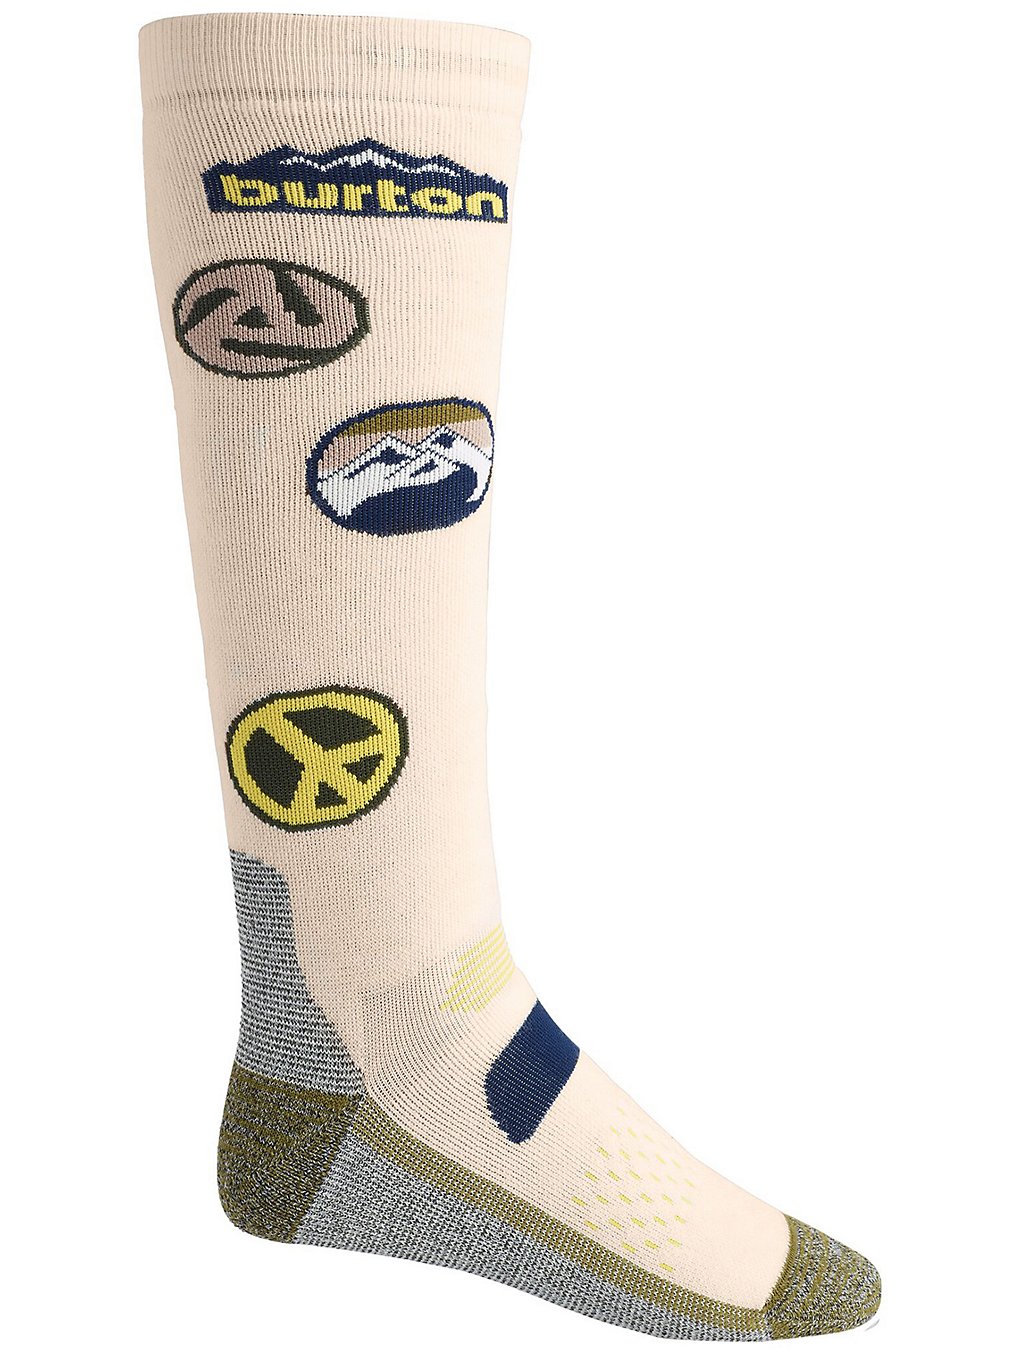 Burton performance mdwt tech socks harmaa, burton